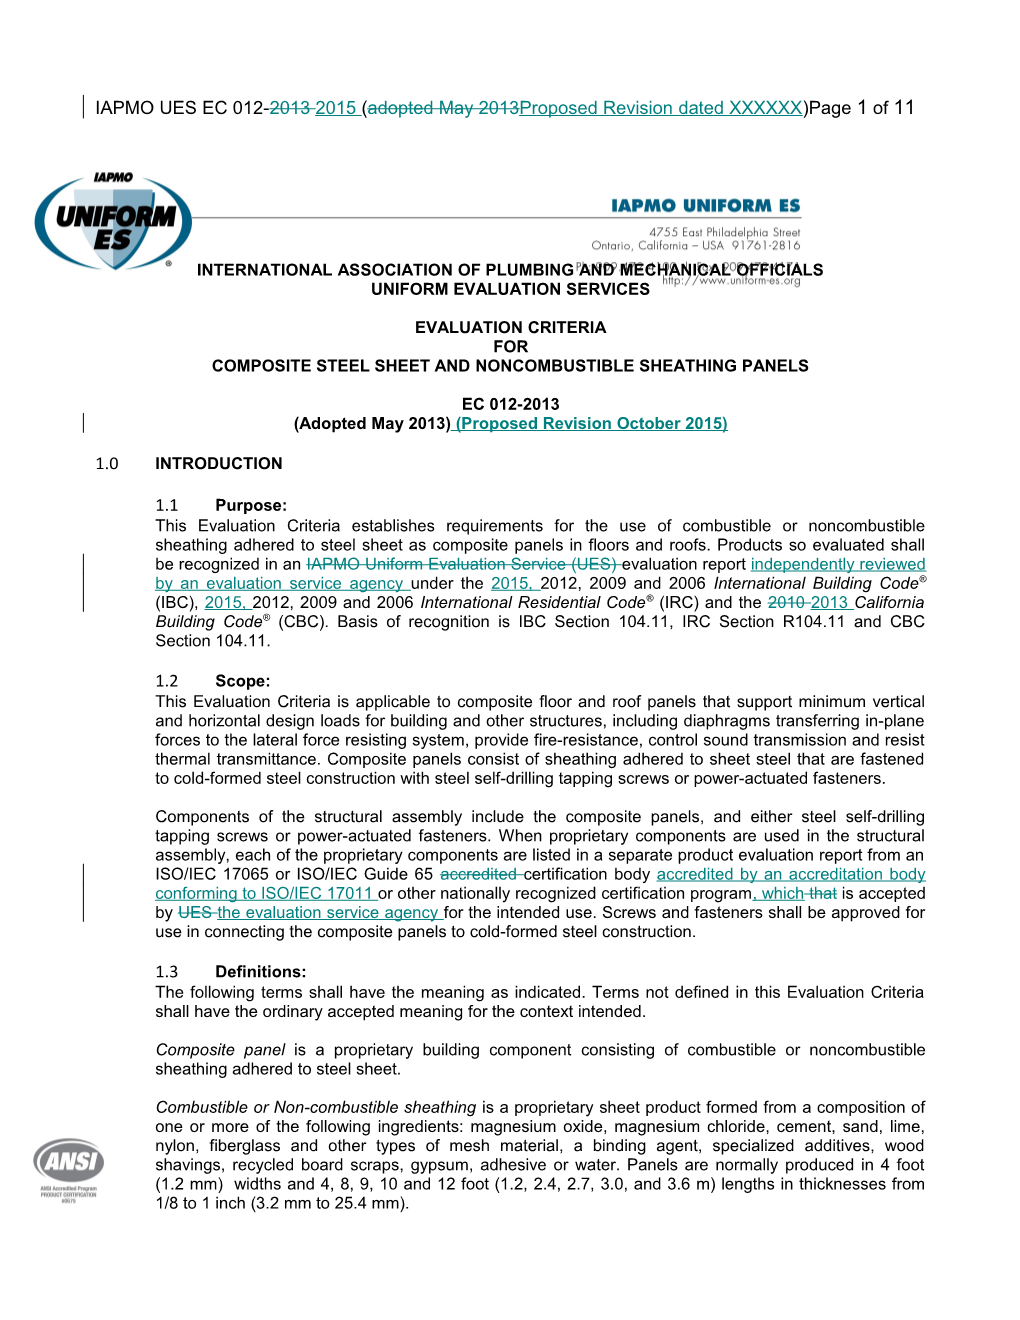 International Association of Plumbingand Mechanical Officials